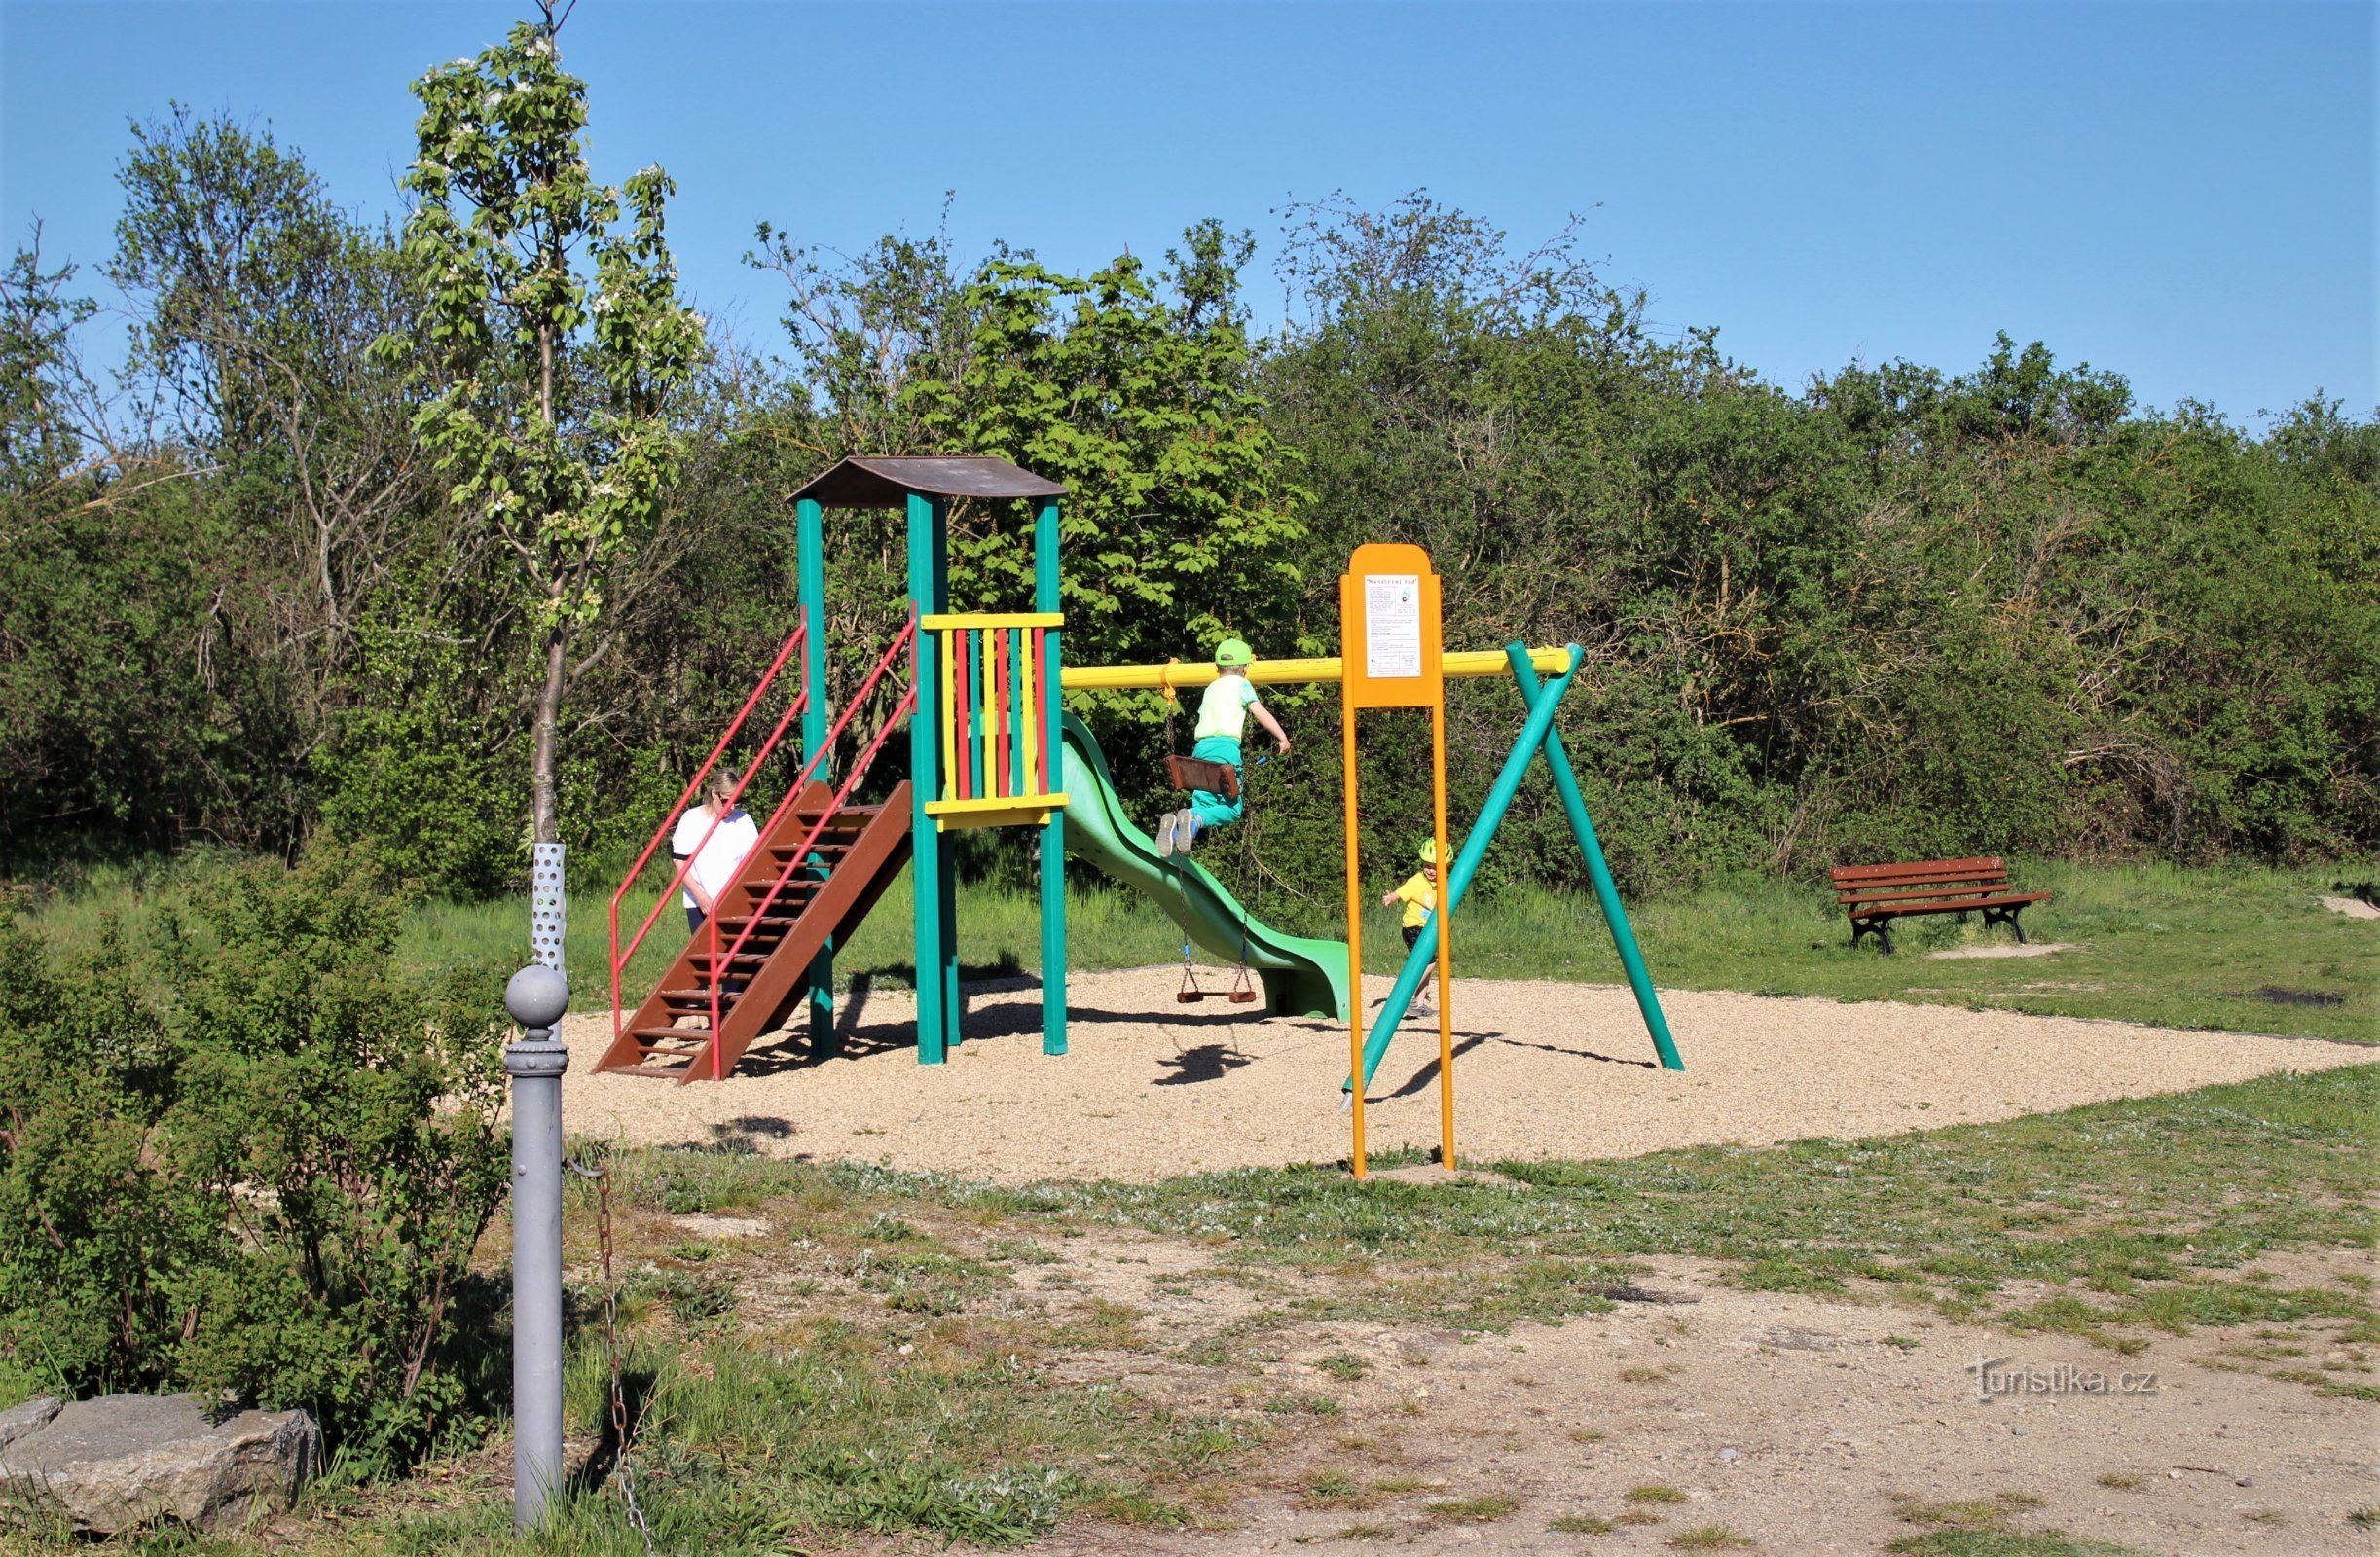 Area di sosta e parco giochi per bambini